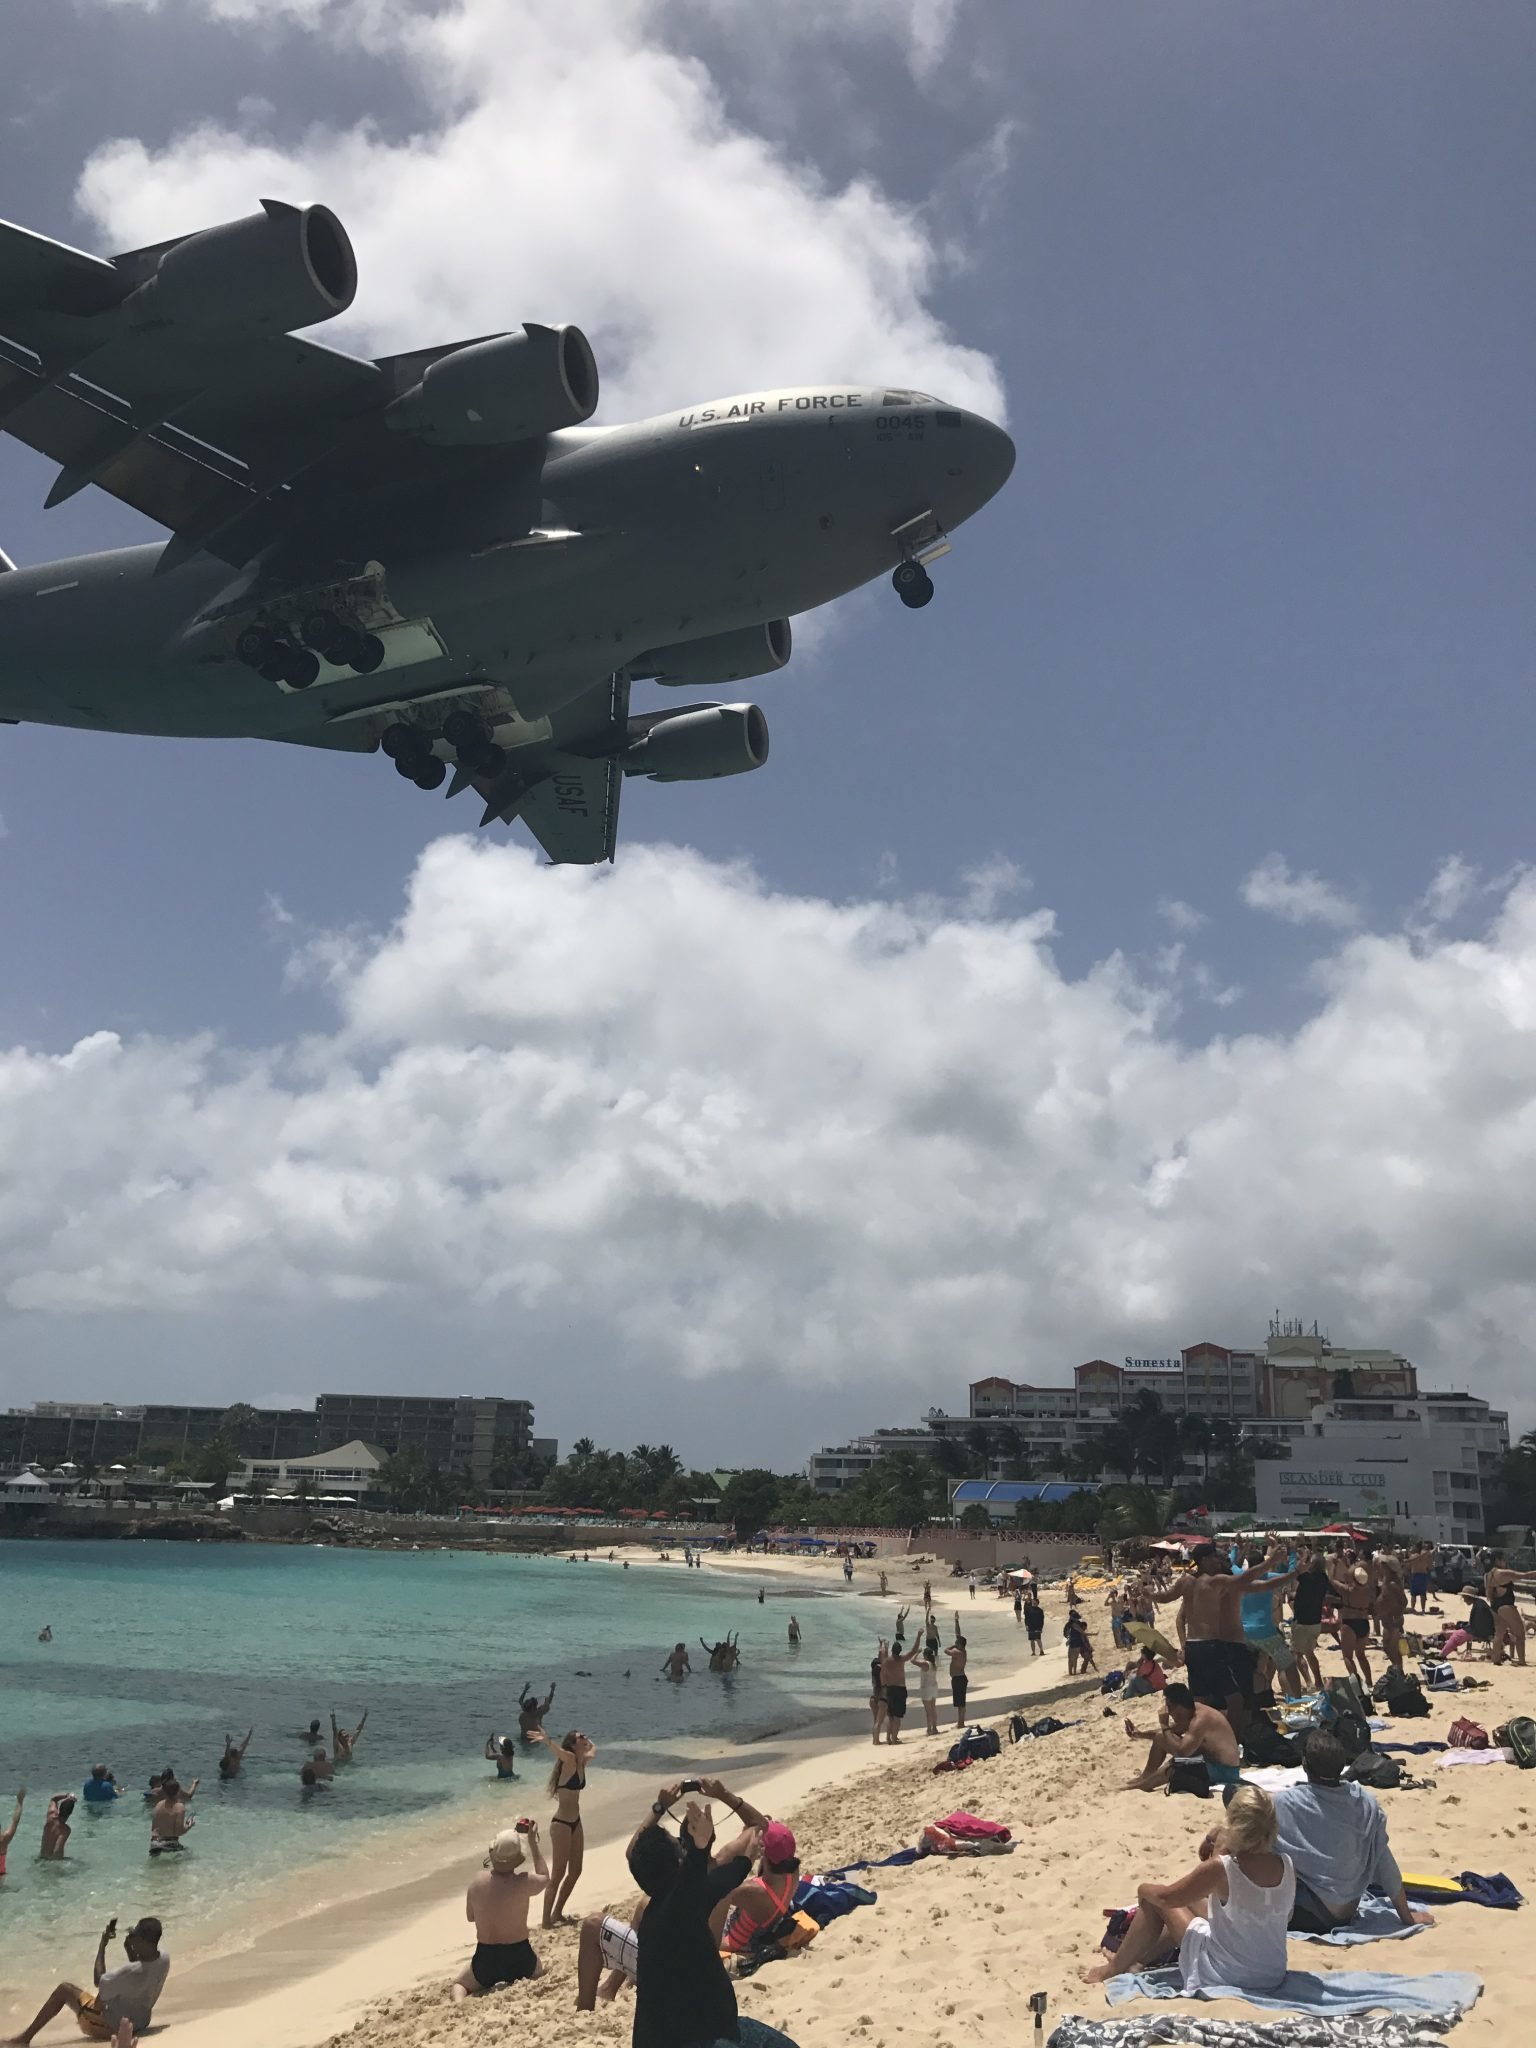 Maho Beach, St. Maarten e o avião da Força Aérea Americana tentando pousar